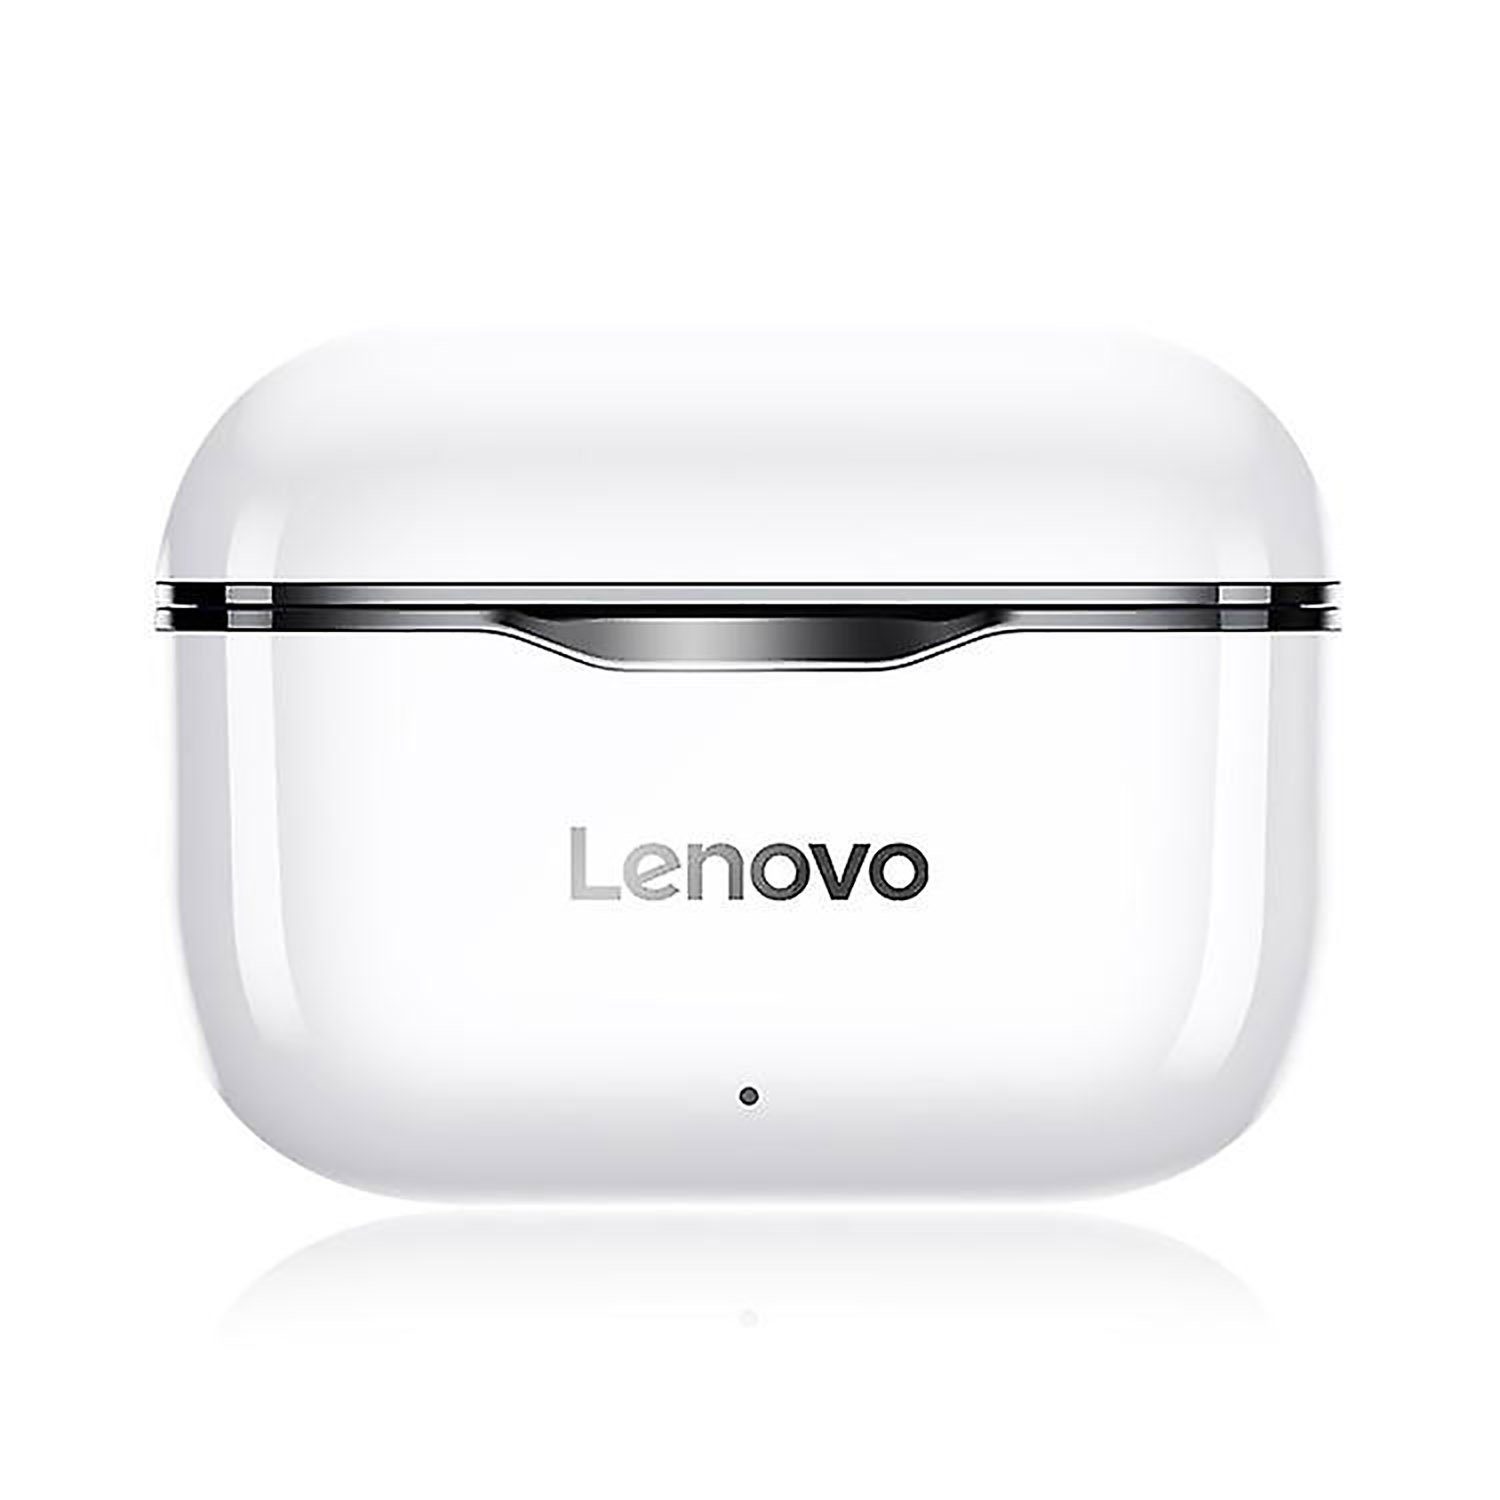 Lenovo LP1 mit Touch-Steuerung Bluetooth-Kopfhörer (True Wireless, Siri, Google Assistant, Bluetooth 5.0, Stereo-Ohrhörer 300 mAh Наушники-Ladehülle - Weiß mit schwarzem Rand)